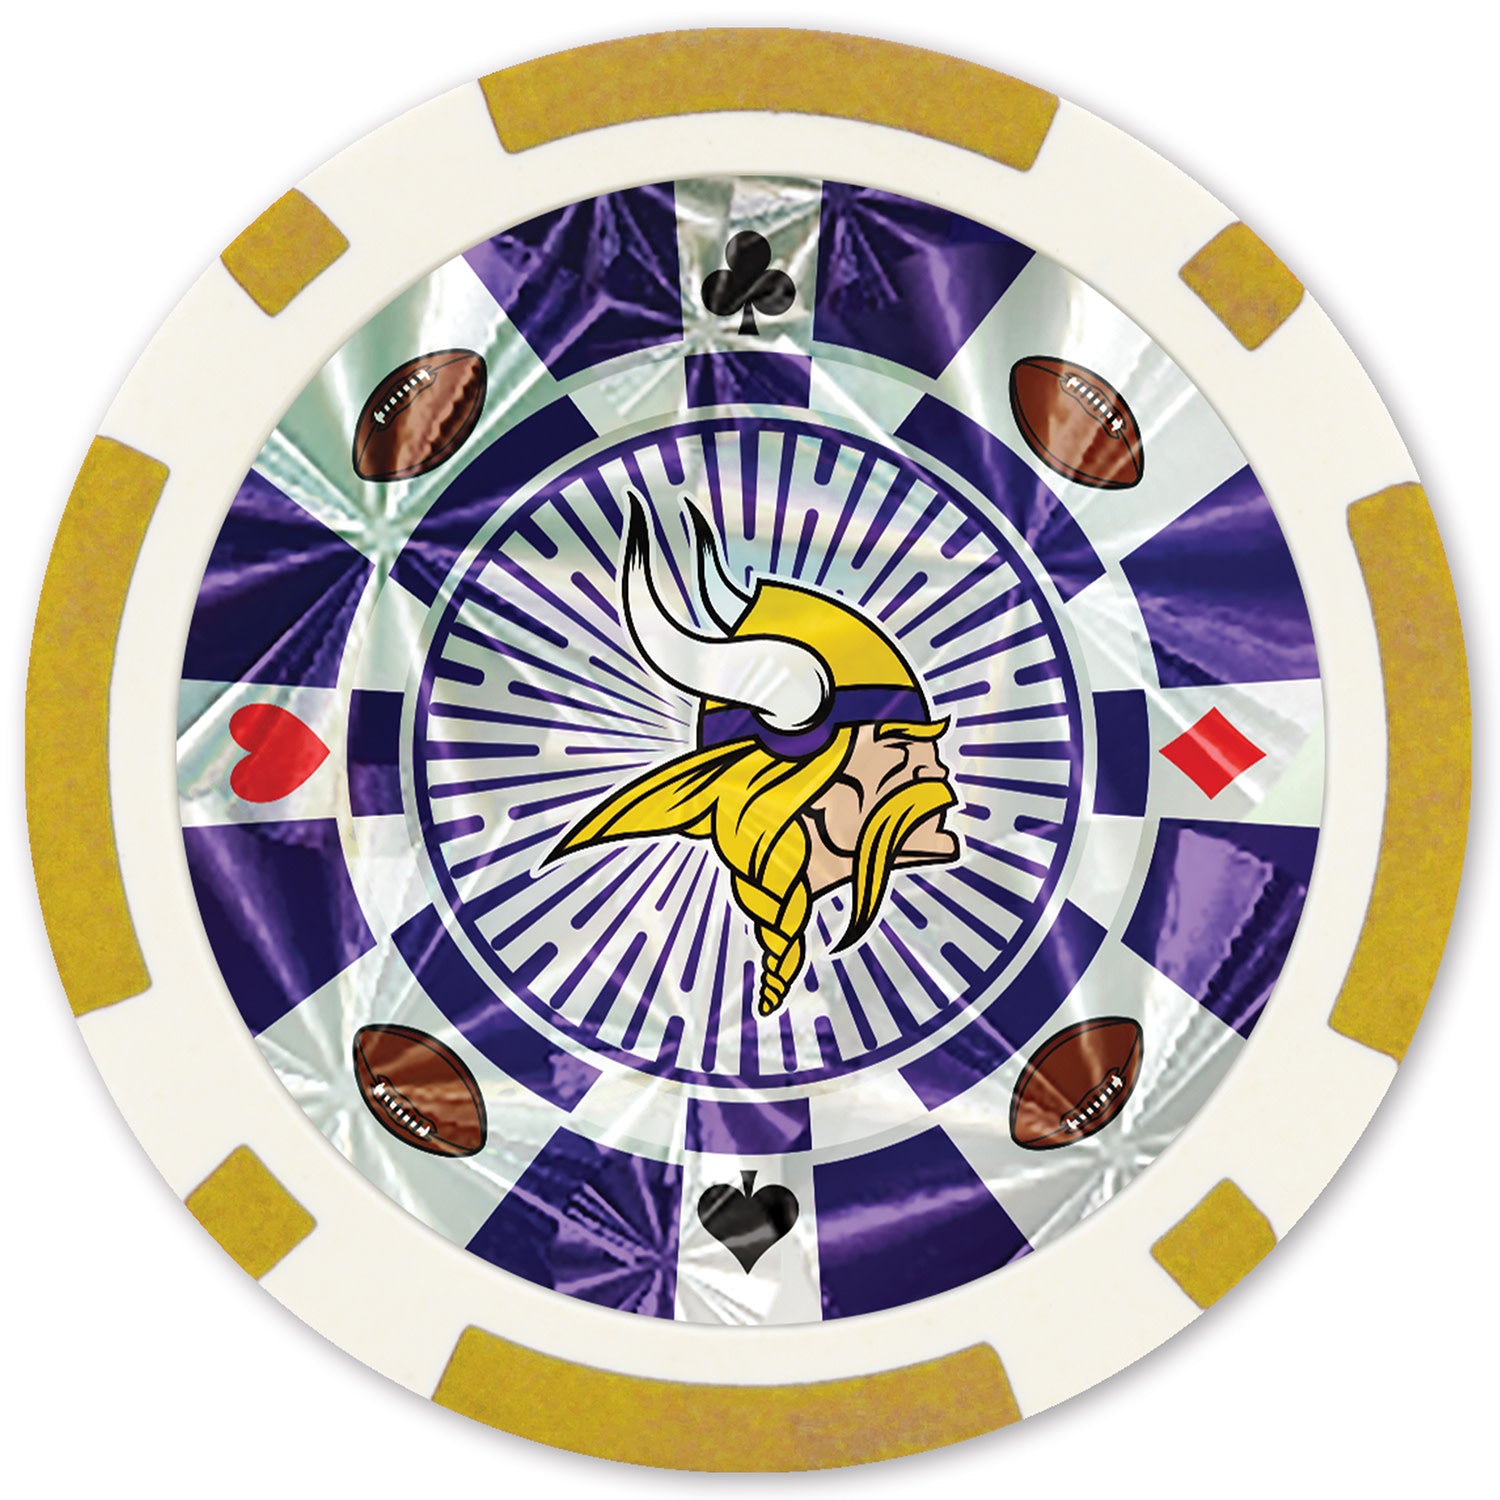 Minnesota Vikings NFL Poker Chips 20pc